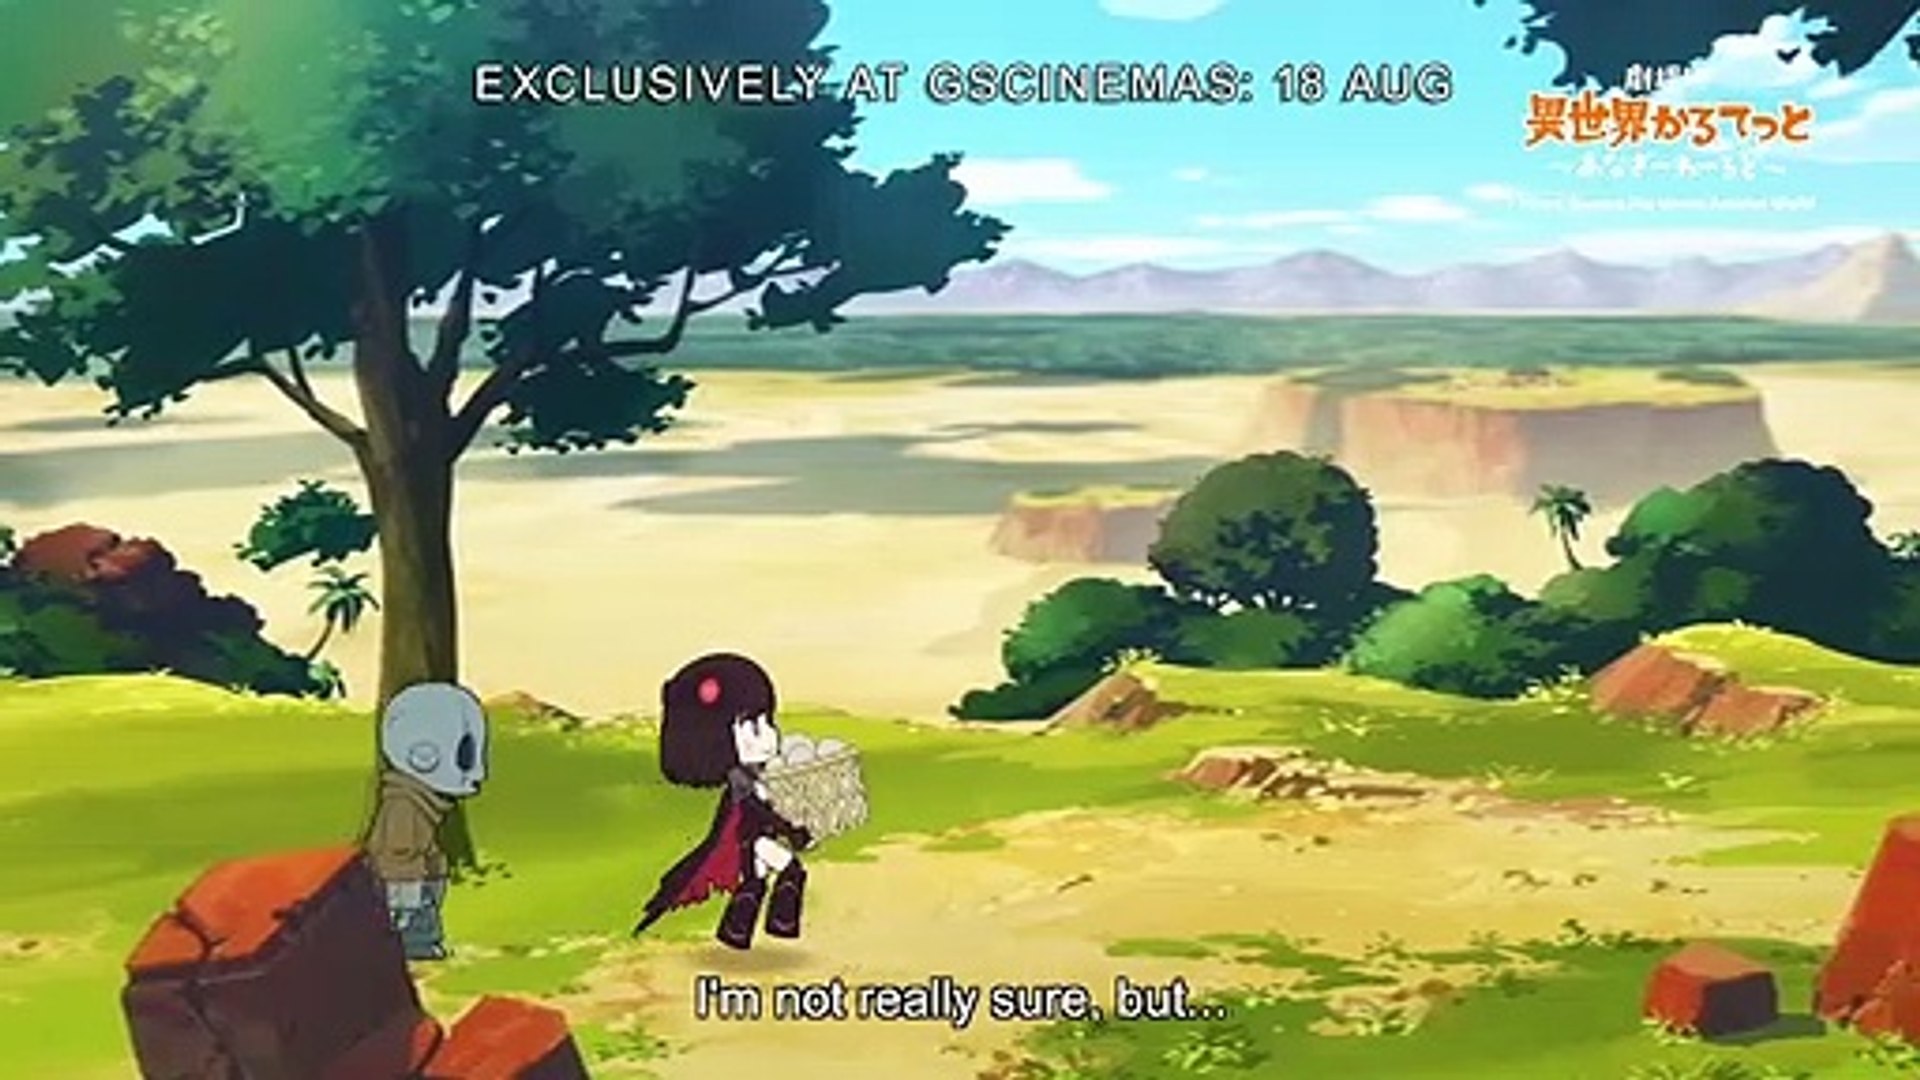 Trailer revela data de estreia do filme anime de Isekai Quartet